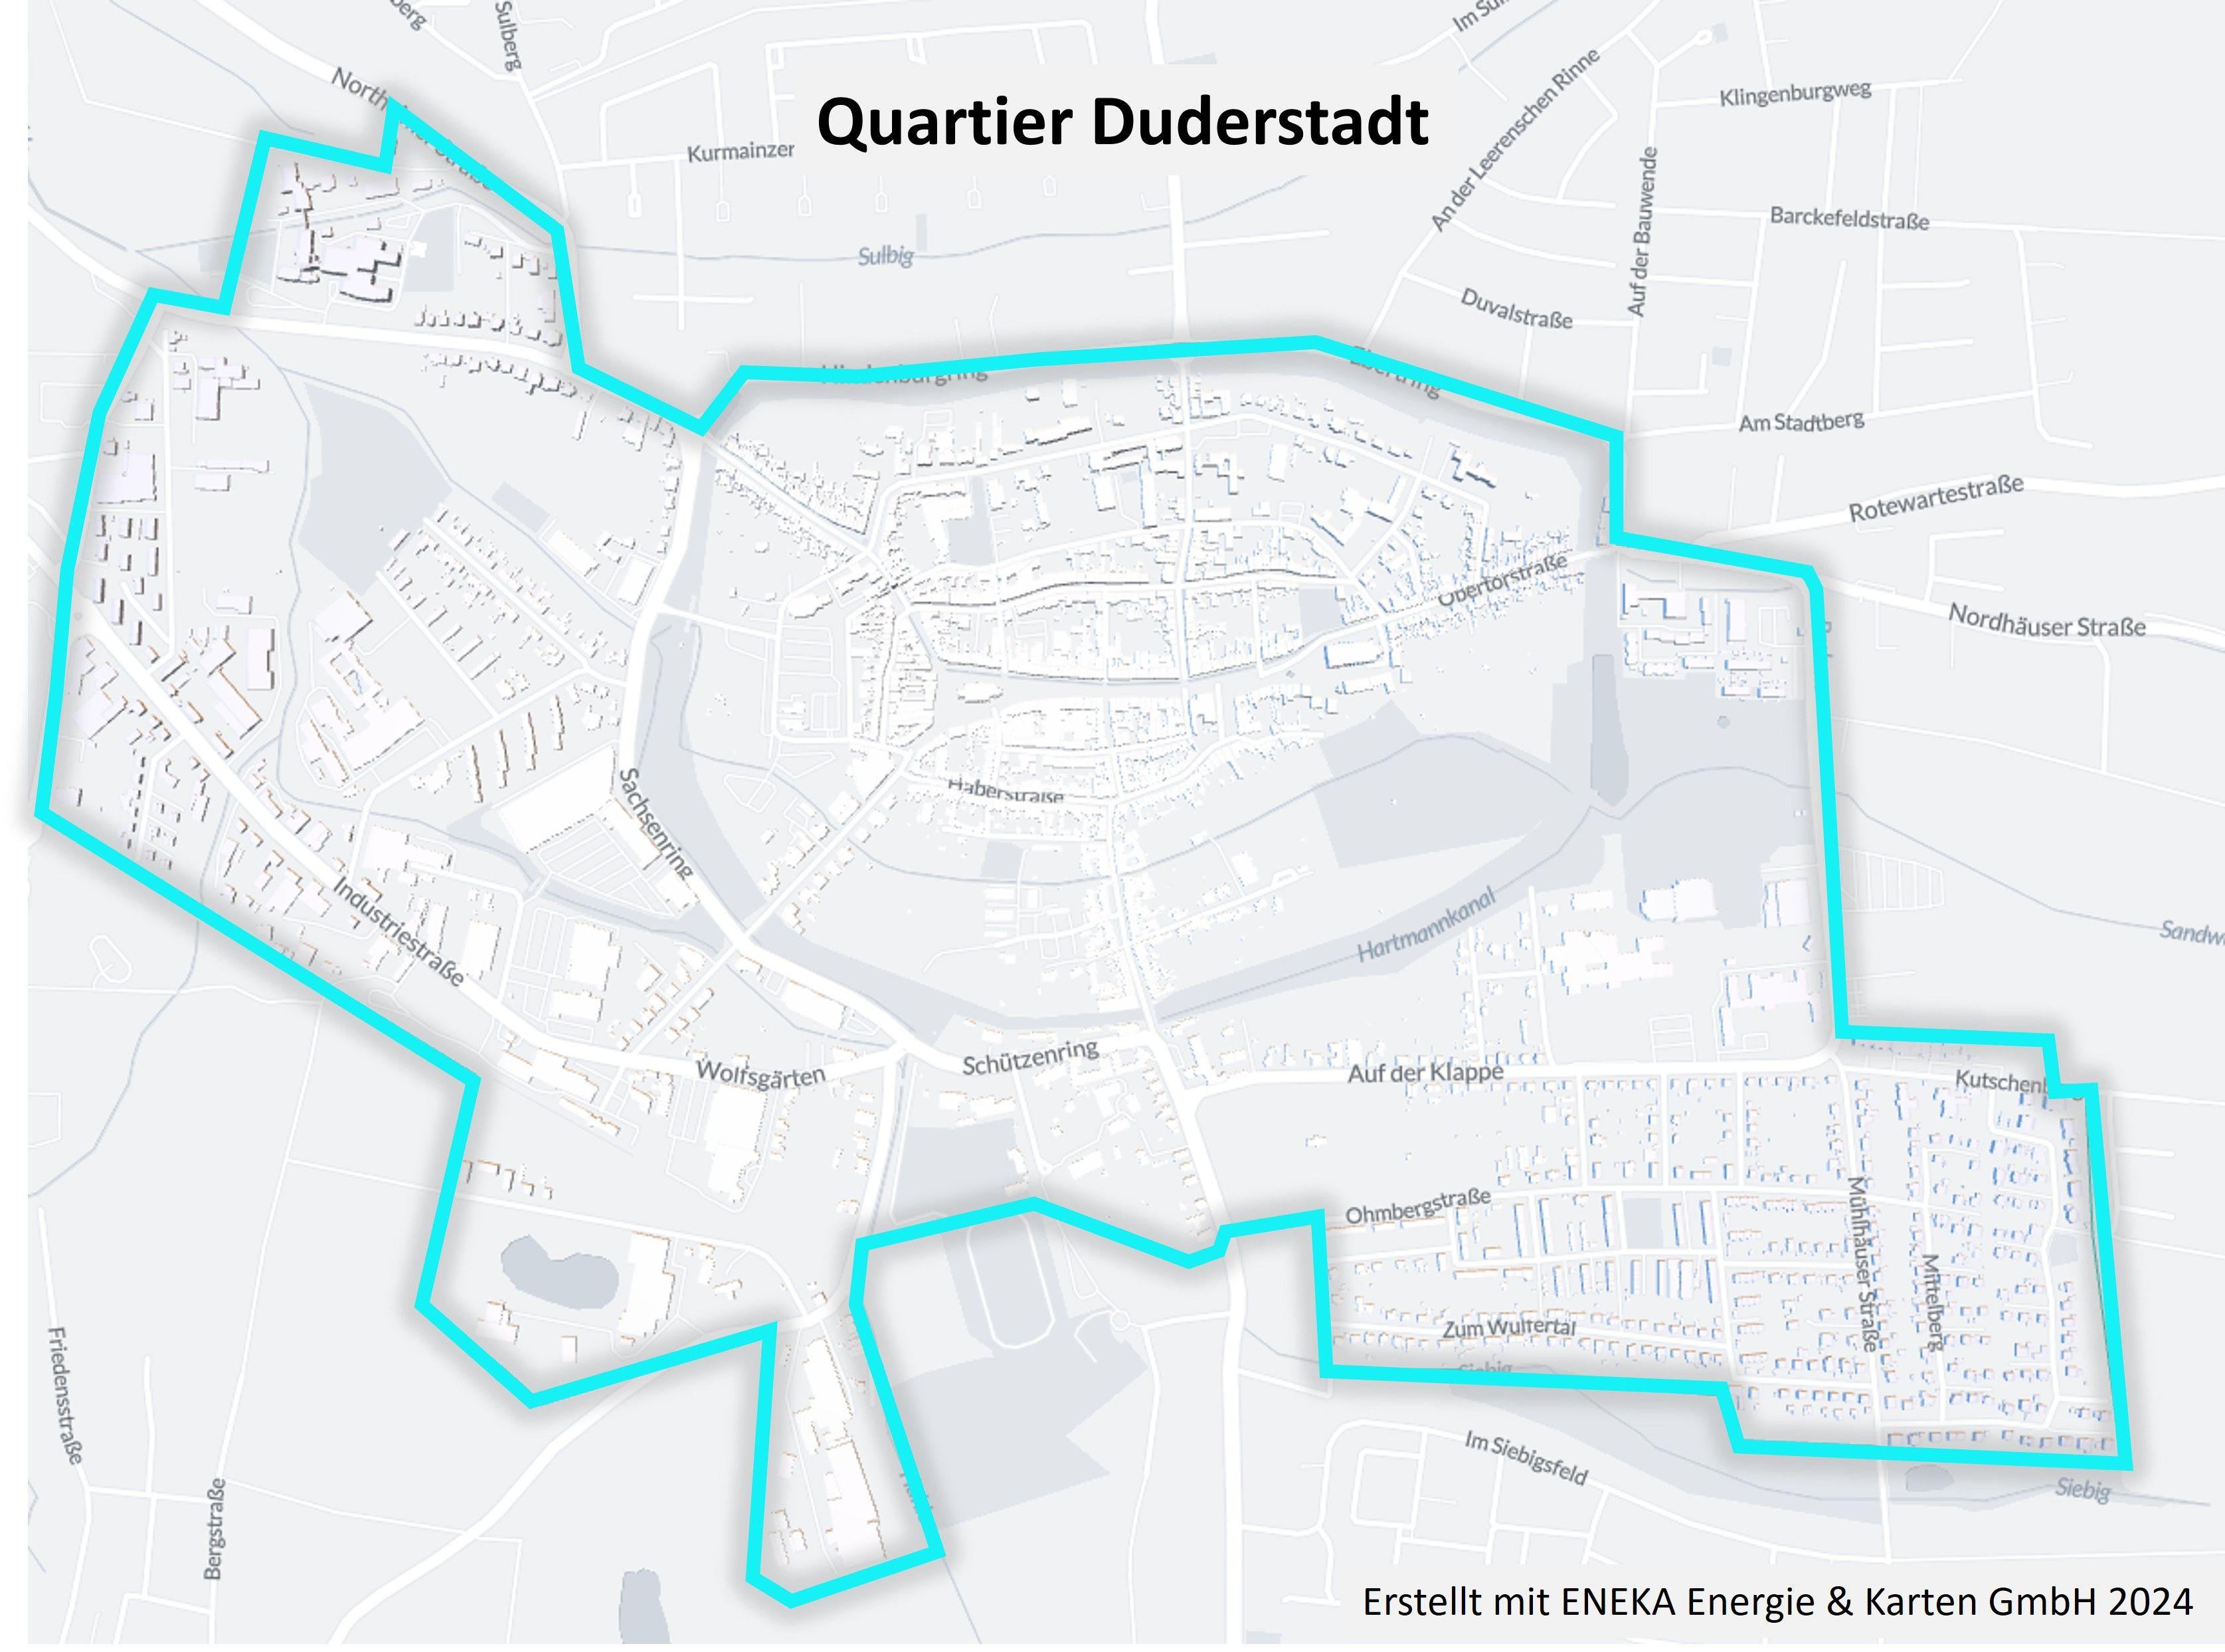 Duderstadts Weg in eine grüne Zukunft | Symbolbild